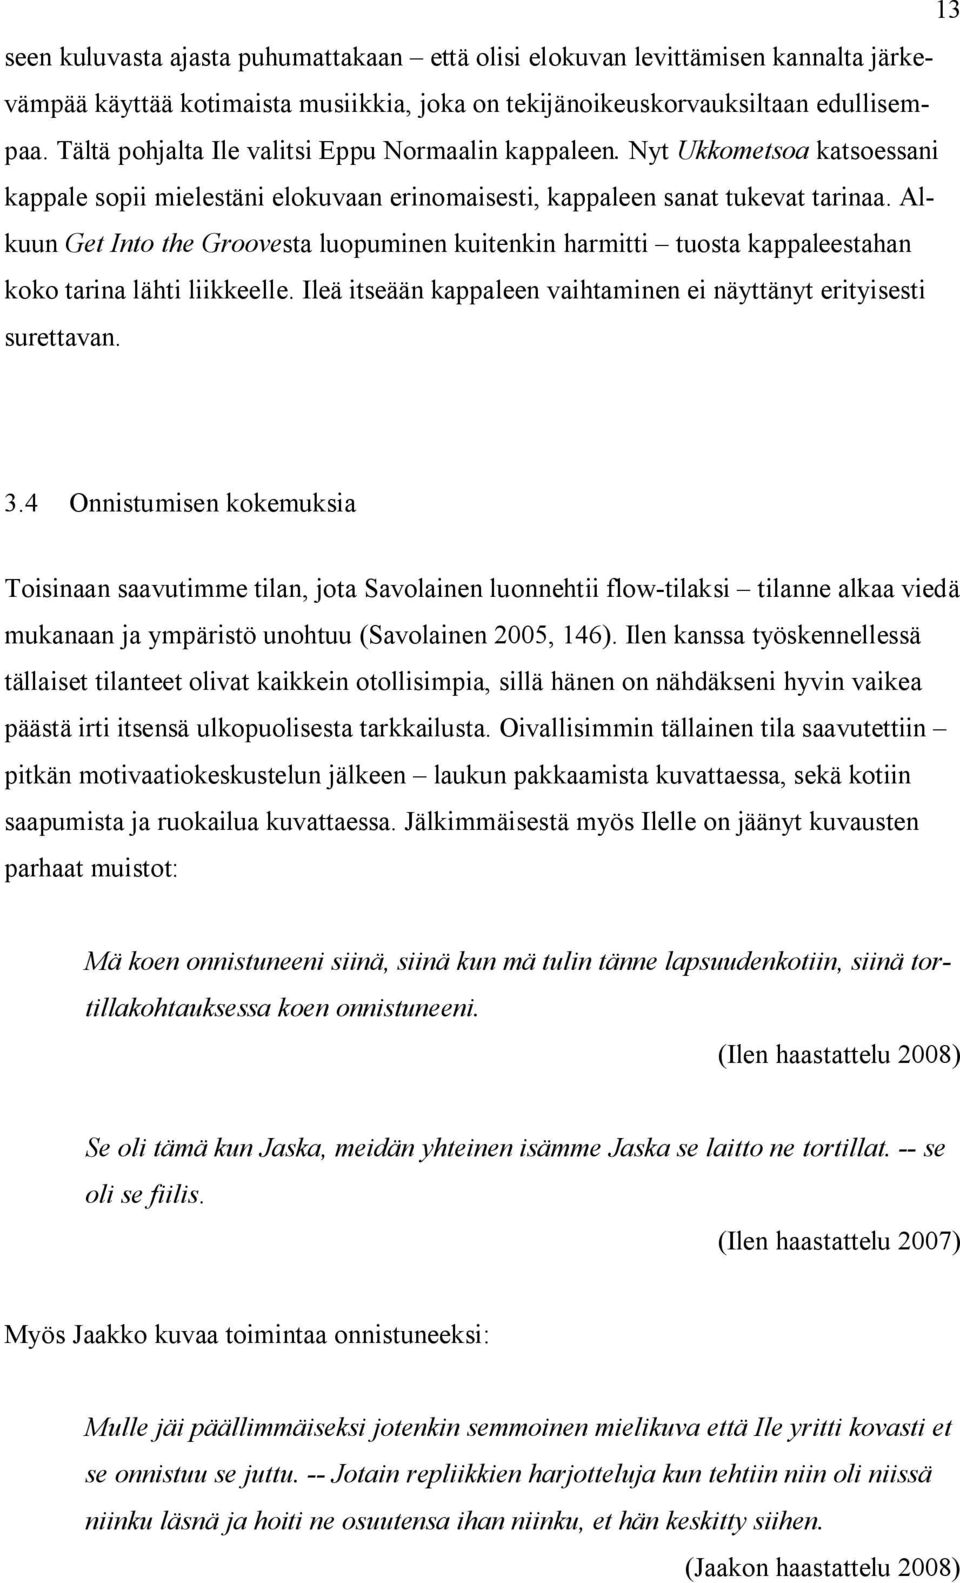 Date. Marika Pentikäinen. Development of instructional equipment for mental health.